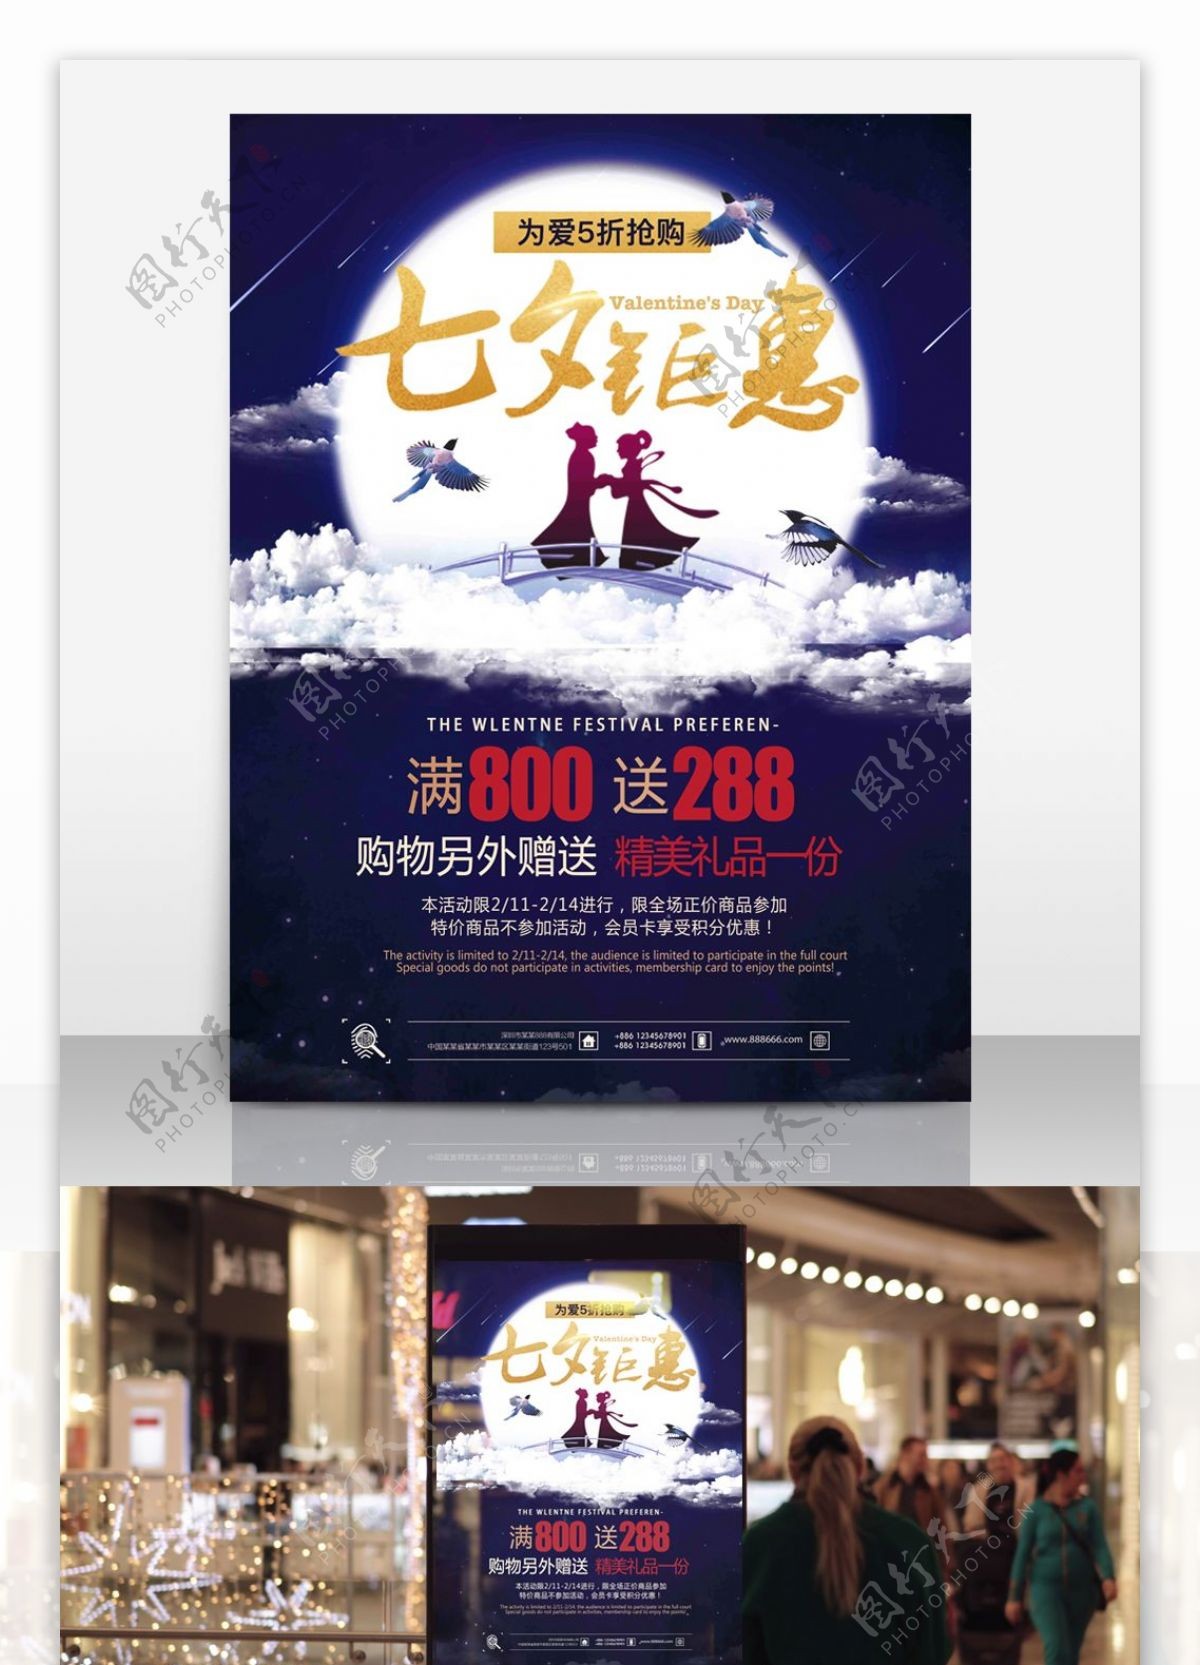 浪漫大气紫色七夕情人节促销海报